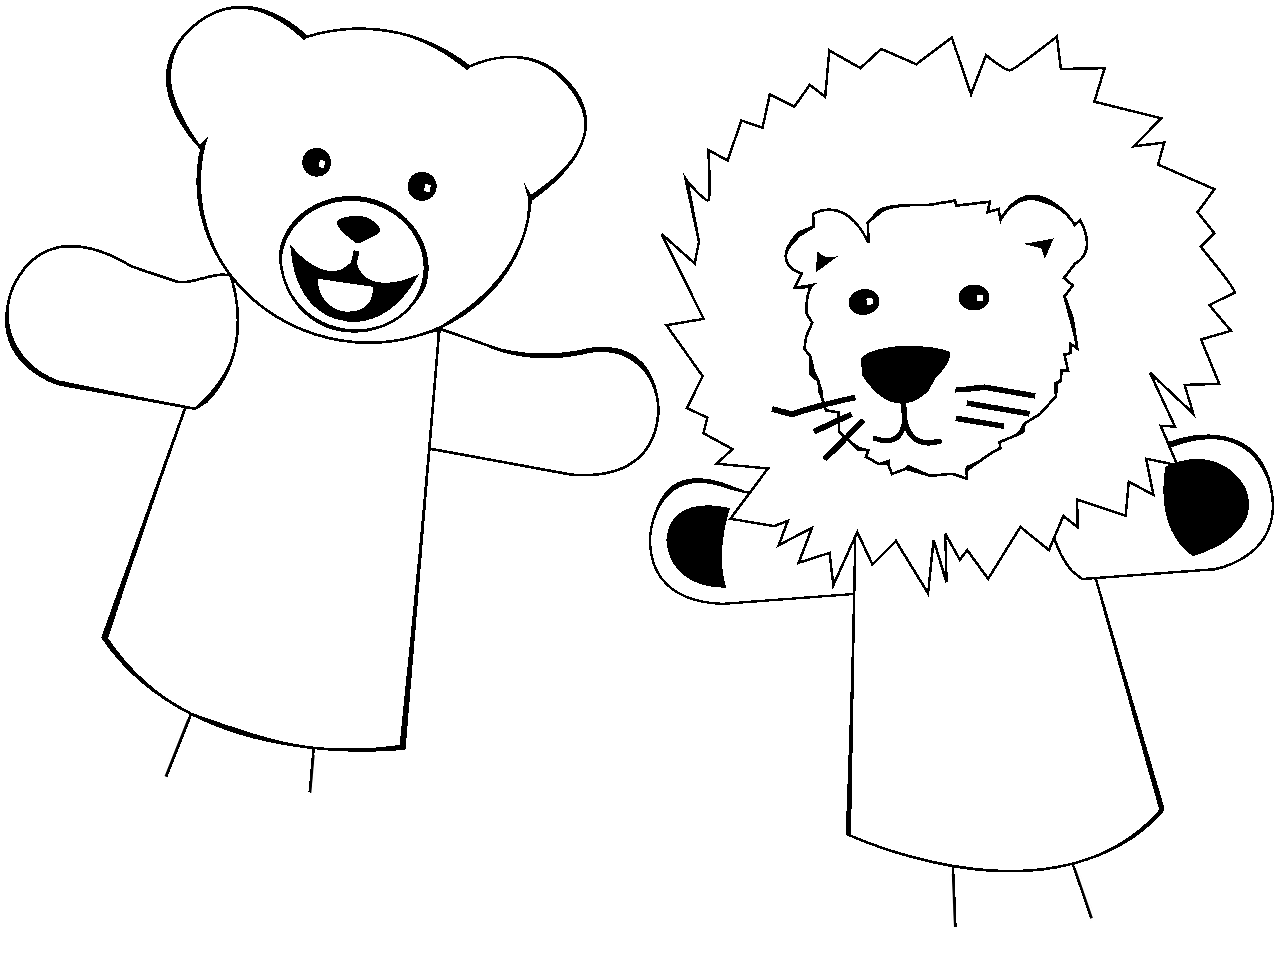 Disegno da colorare di orso e leone marionette